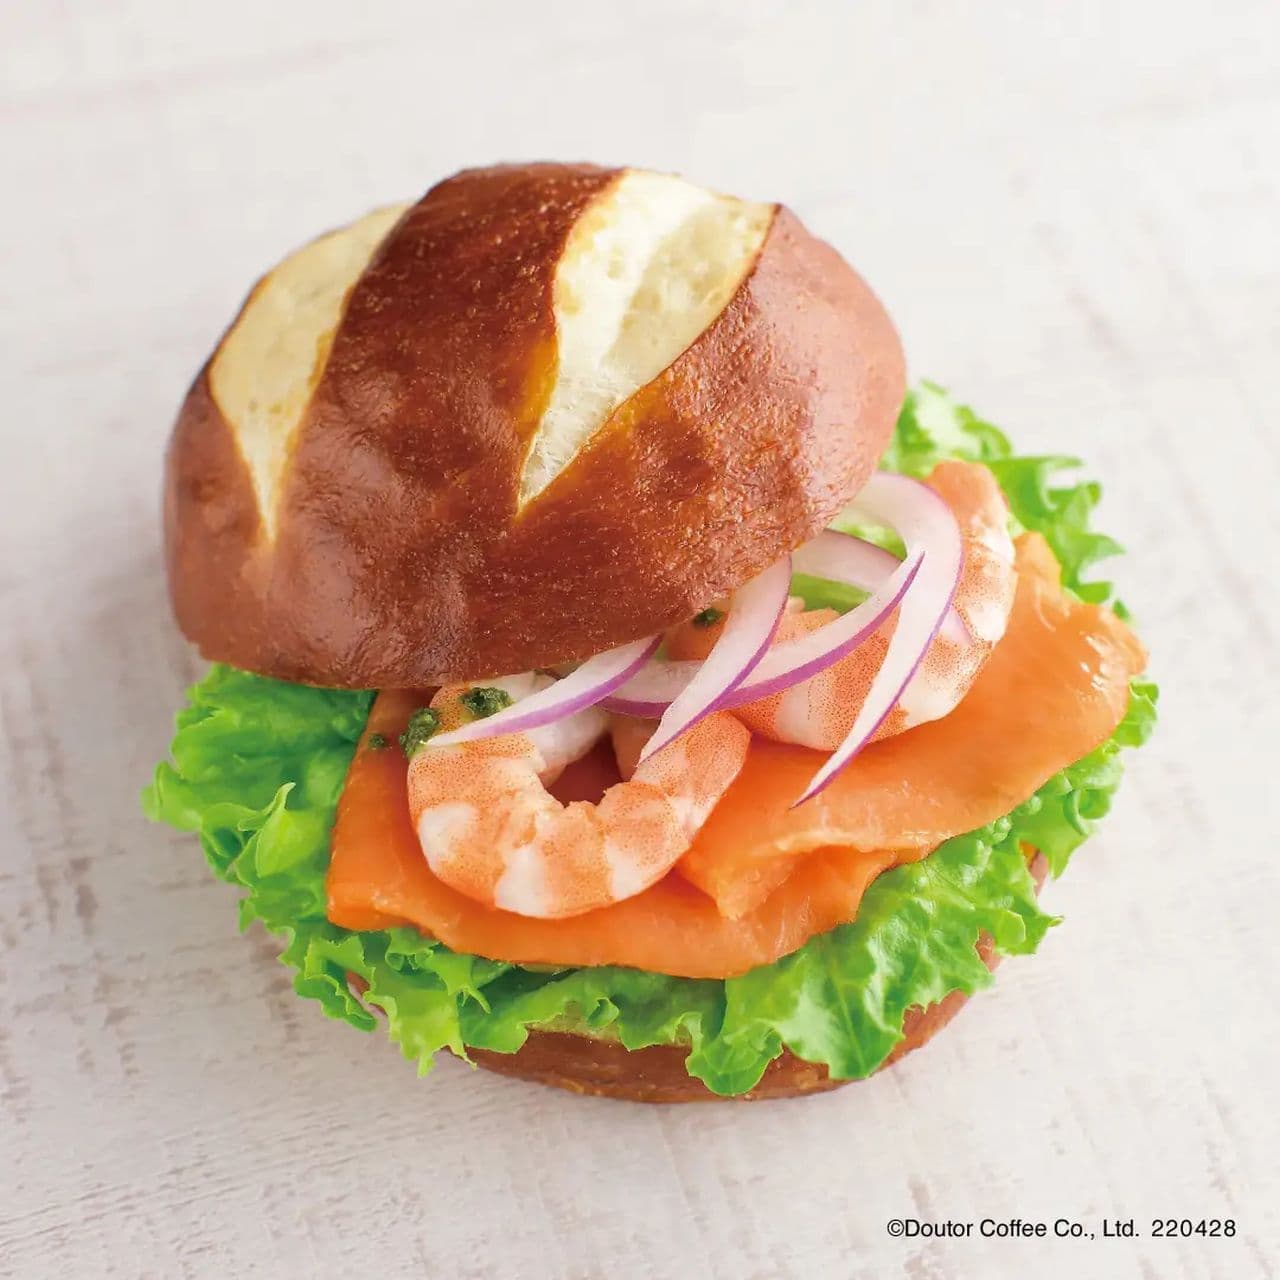 Excelsior Cafe "Pretzel Sandwich Salmon & Shrimp - Basil Sauce